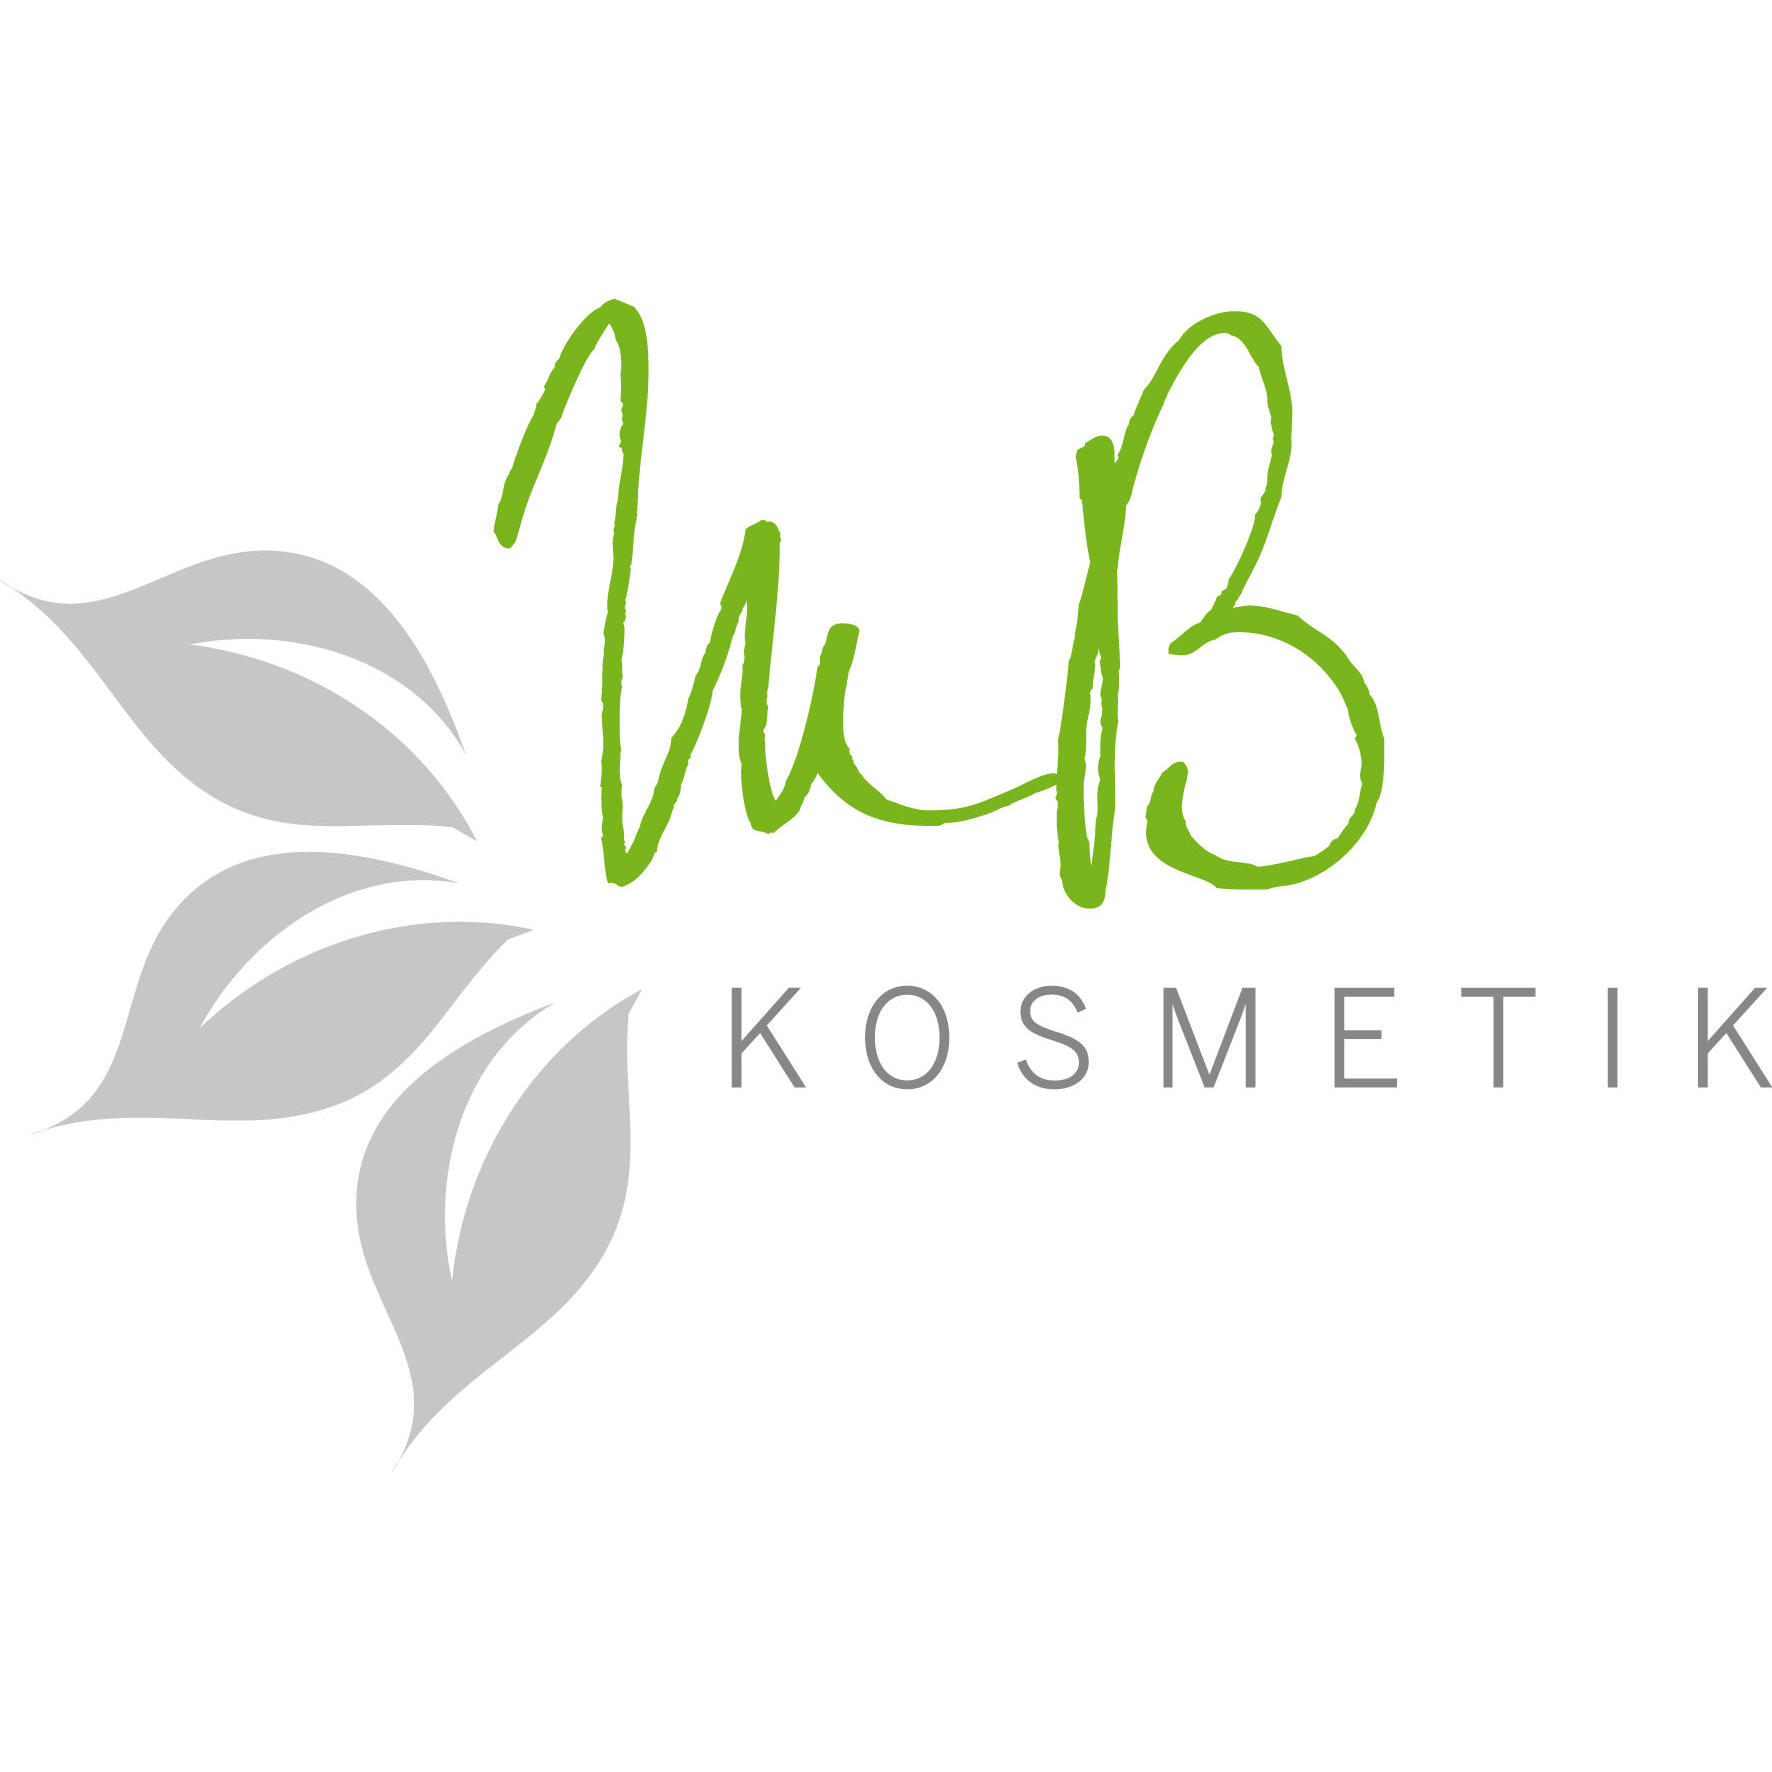 MB Kosmetik in Cham - Logo